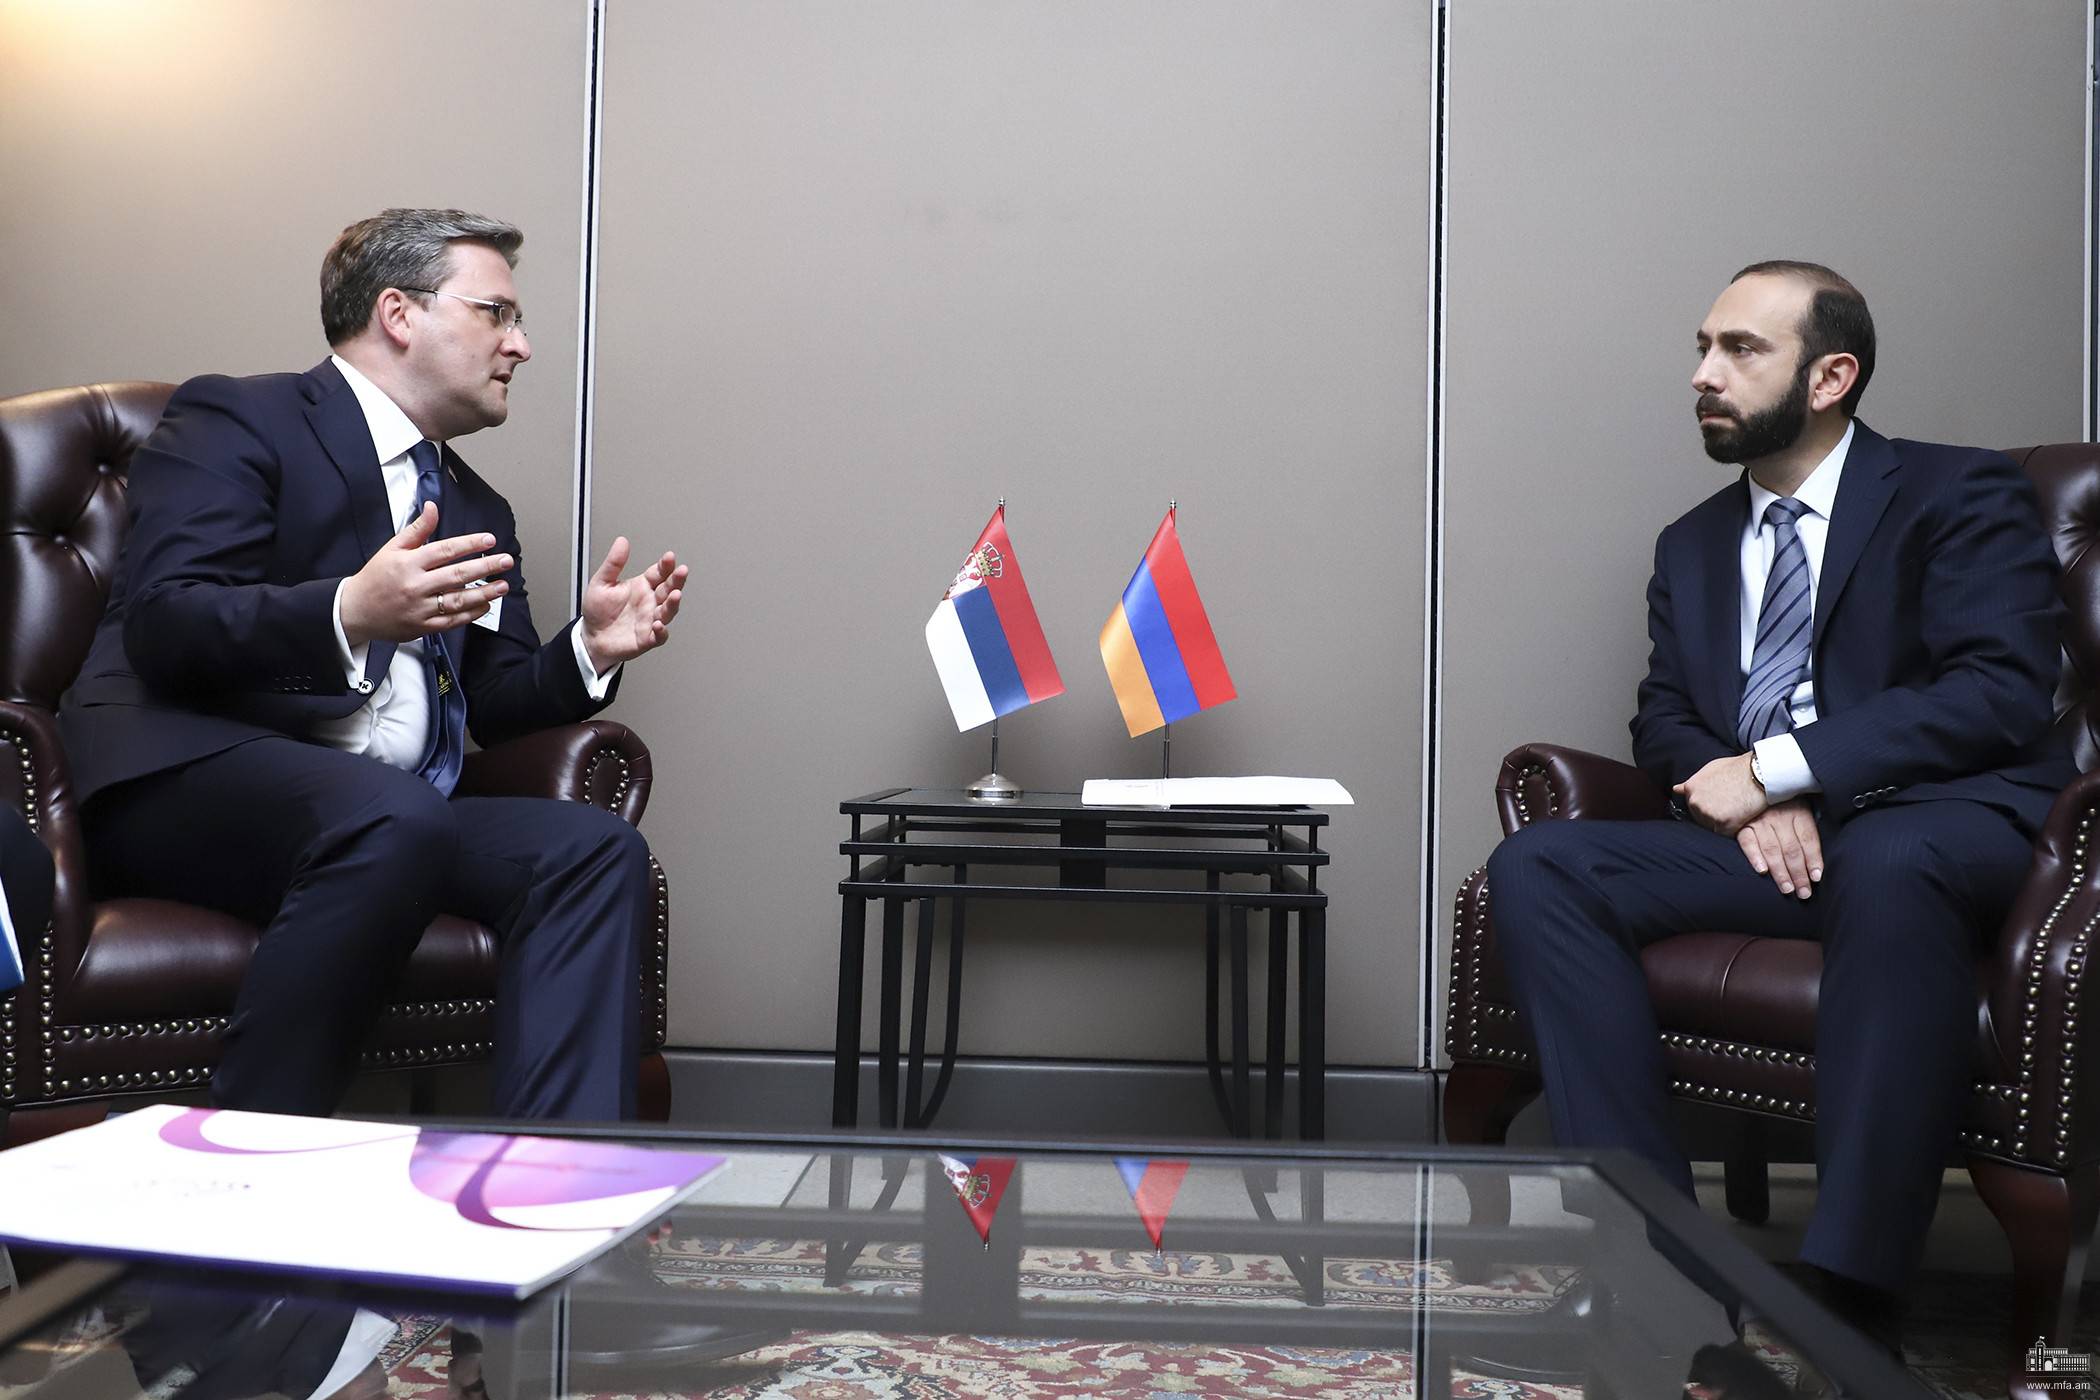 Հայաստանի ԱԳ նախարարը հանդիպում է ունեցել Սերբիայի ԱԳ նախարարի հետ